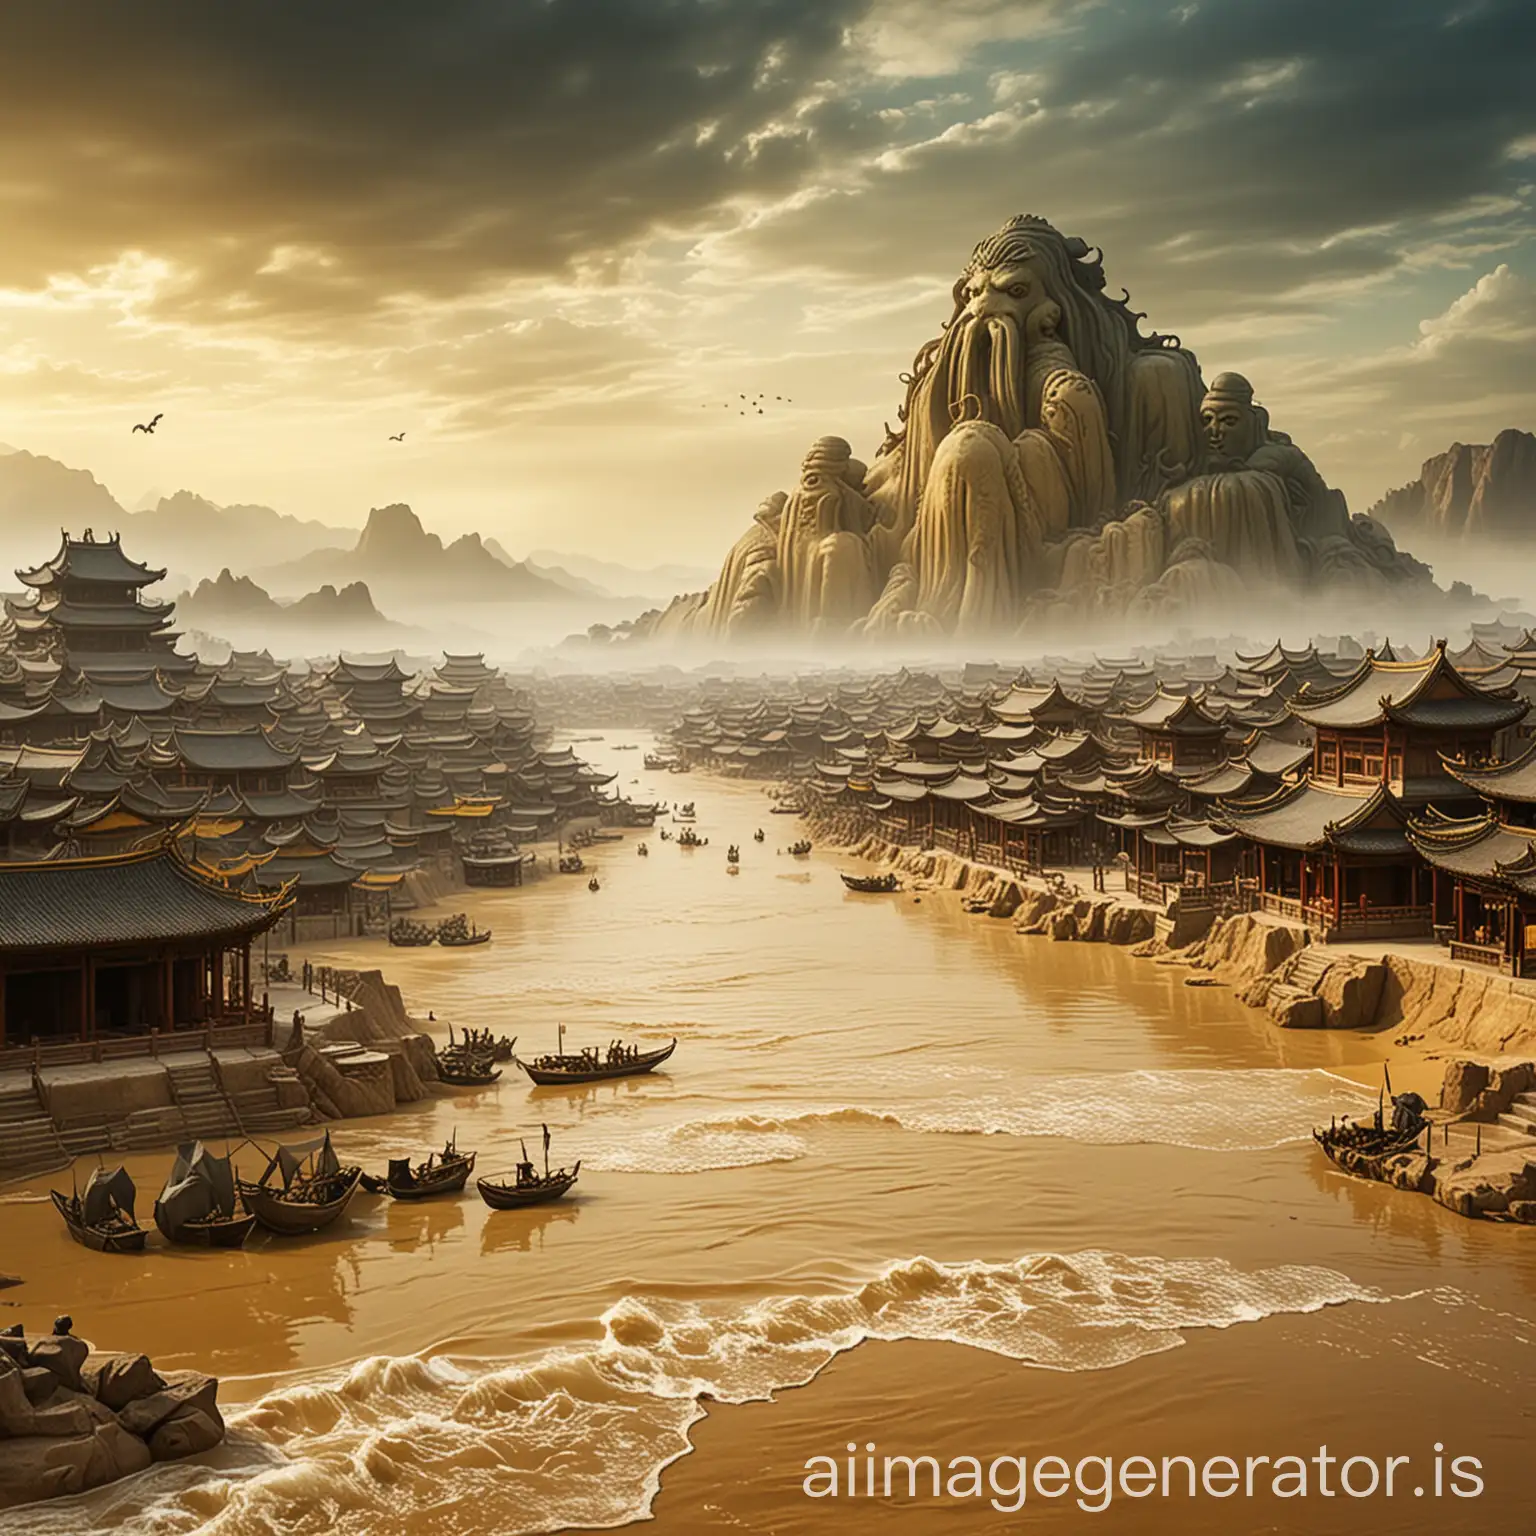 中国唐朝，西域小城，漫天黄沙，水墨画风格，城中心是克苏鲁神话当中的大衮